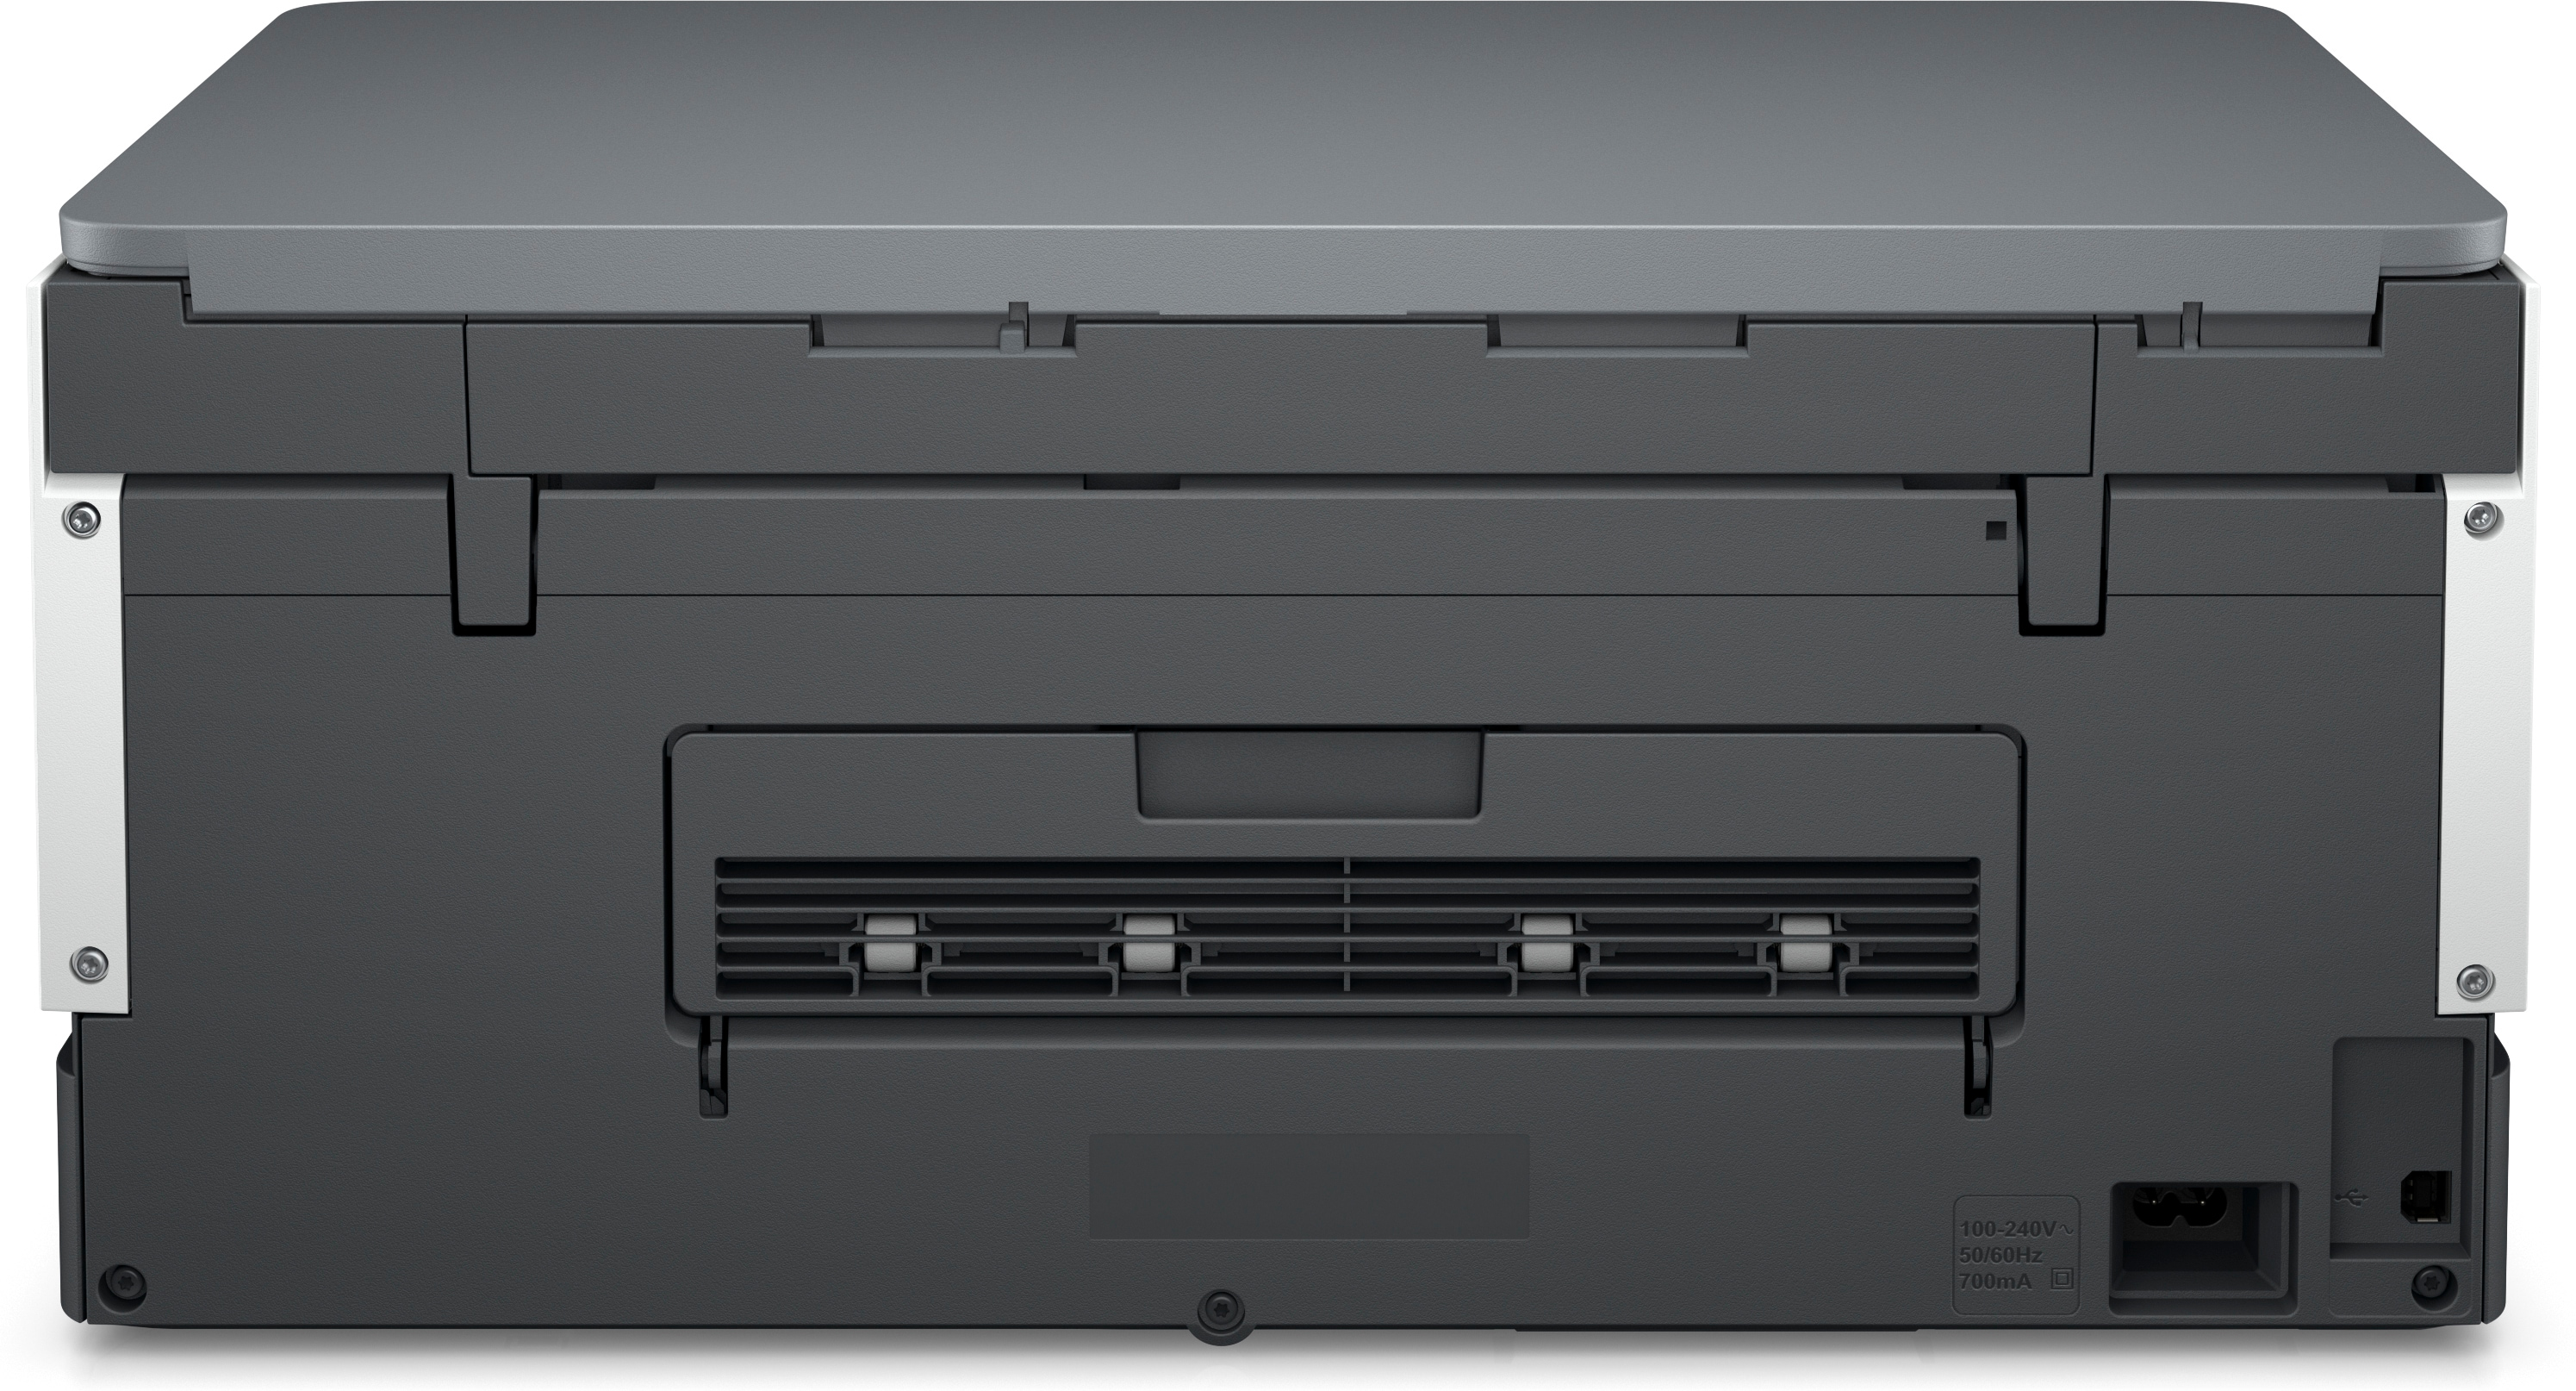 Tank Inkjet WLAN 720 Smart HP Netzwerkfähig Multifunktionsdrucker